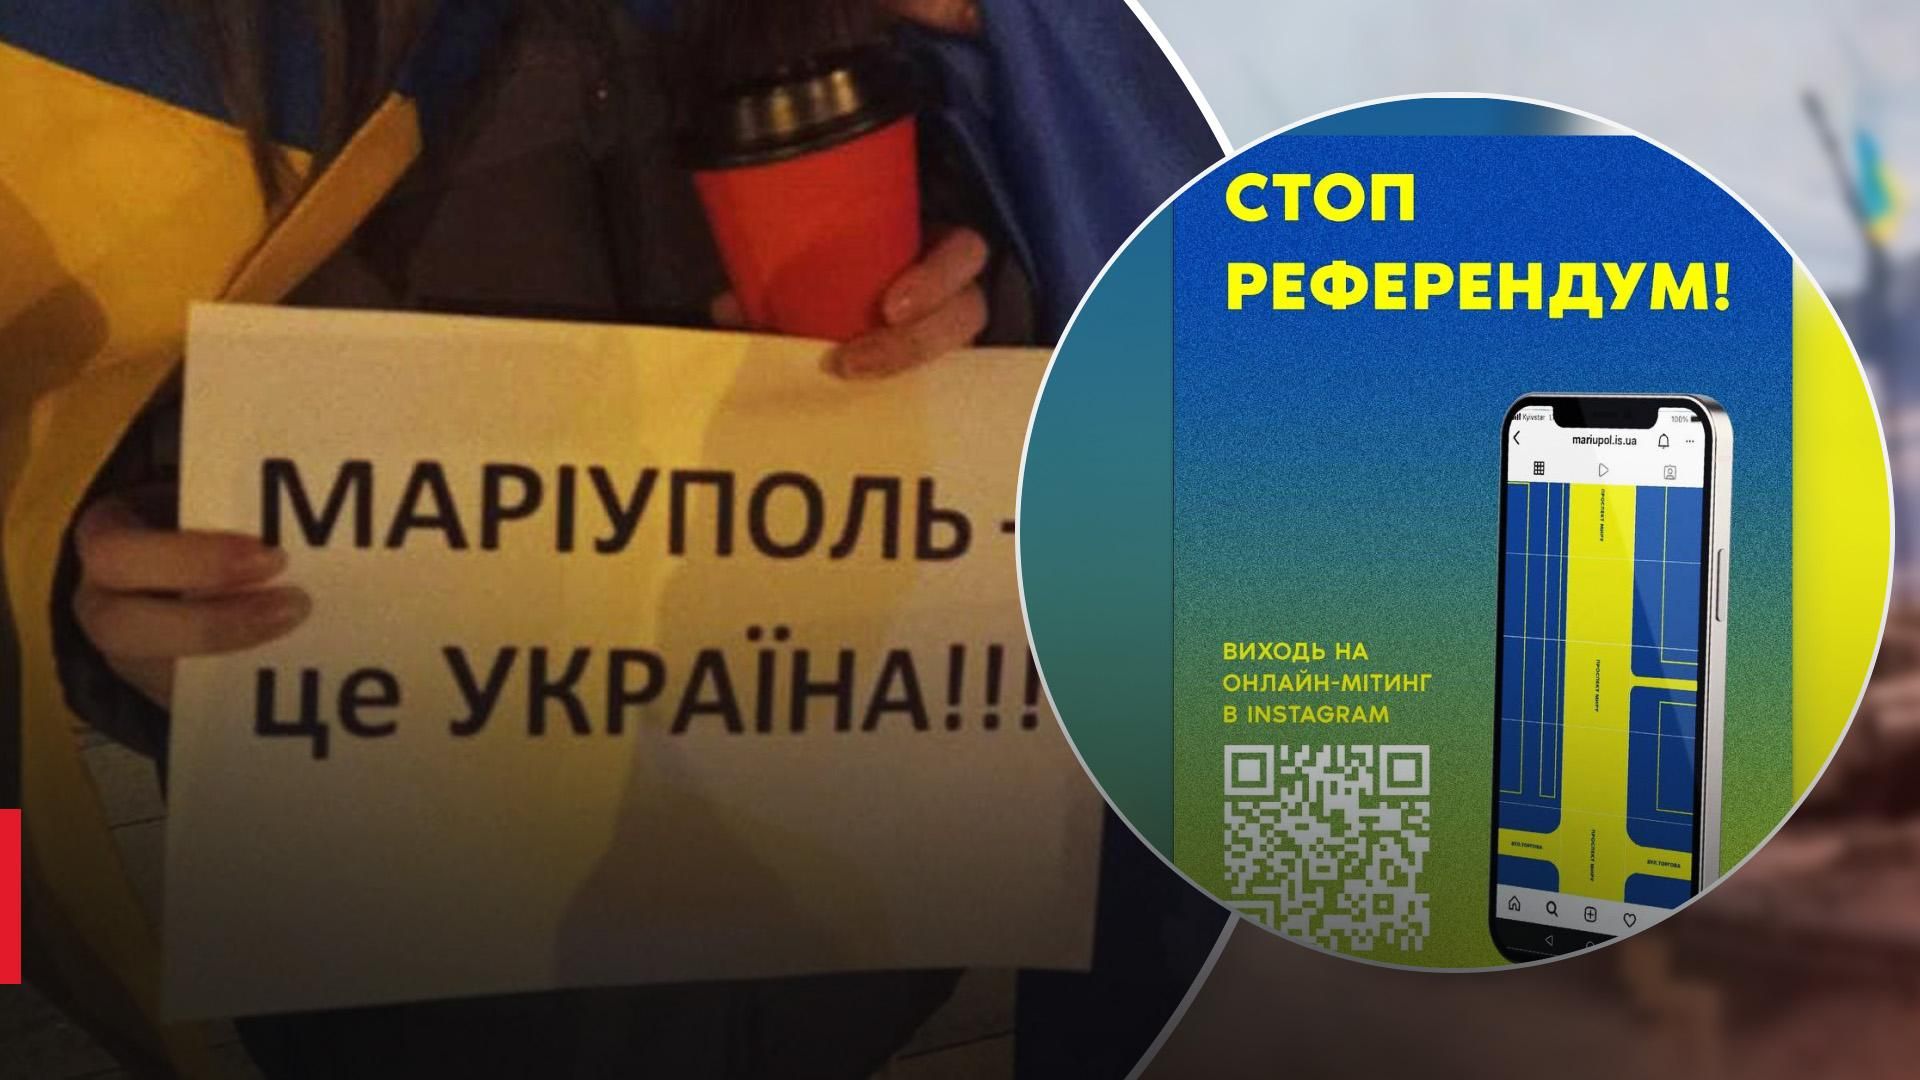 Щоб зупинити рефоерендум в Україні пройде онлайн-мітинг "Маріуполь – це Україна"